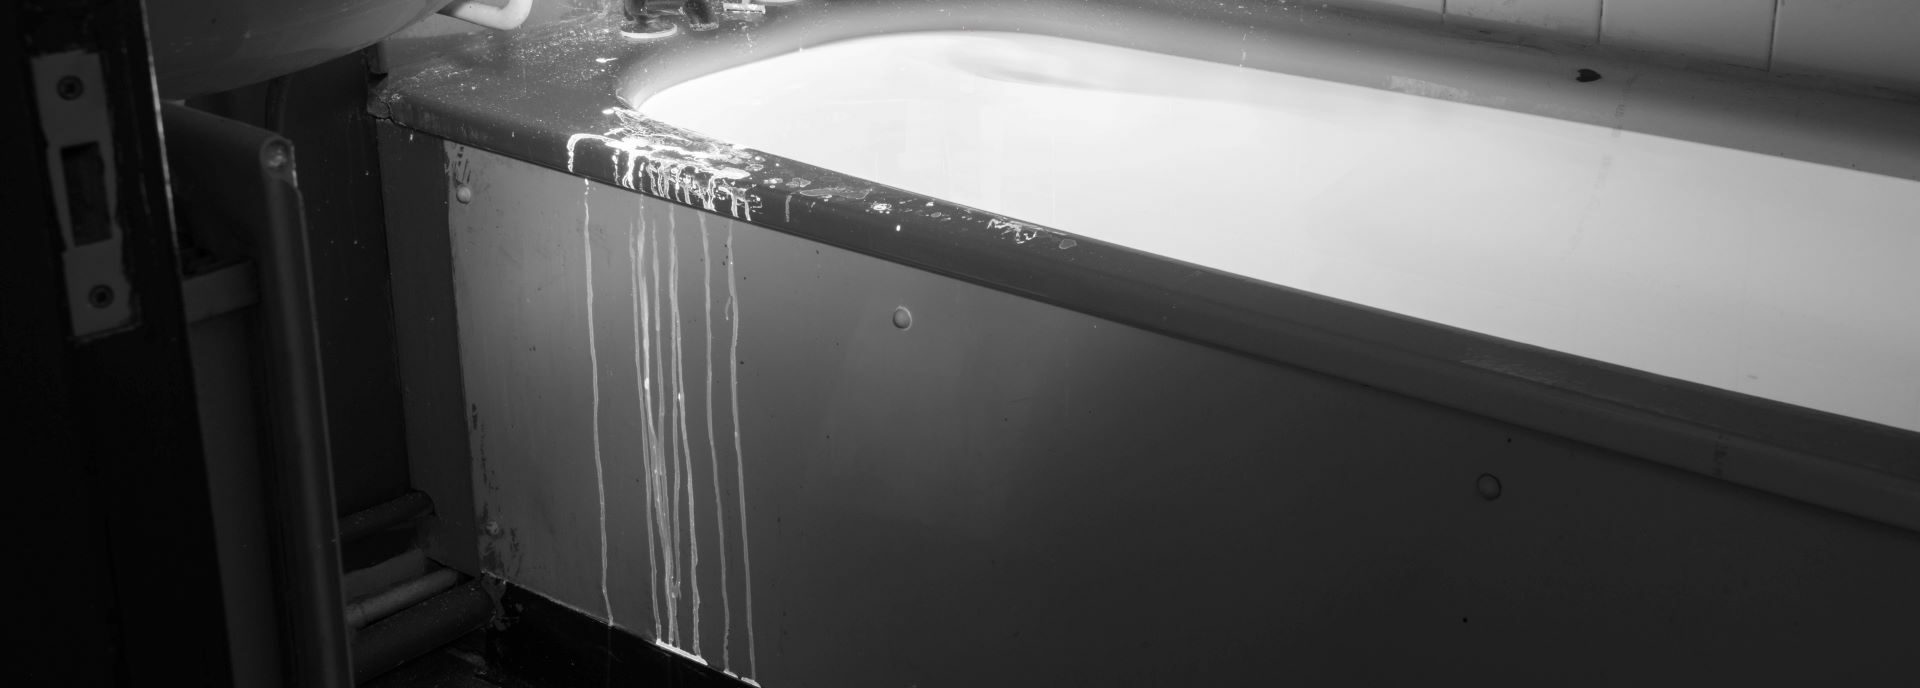 A monotone photograph of a bath, a white liquid drips down the side of the bath